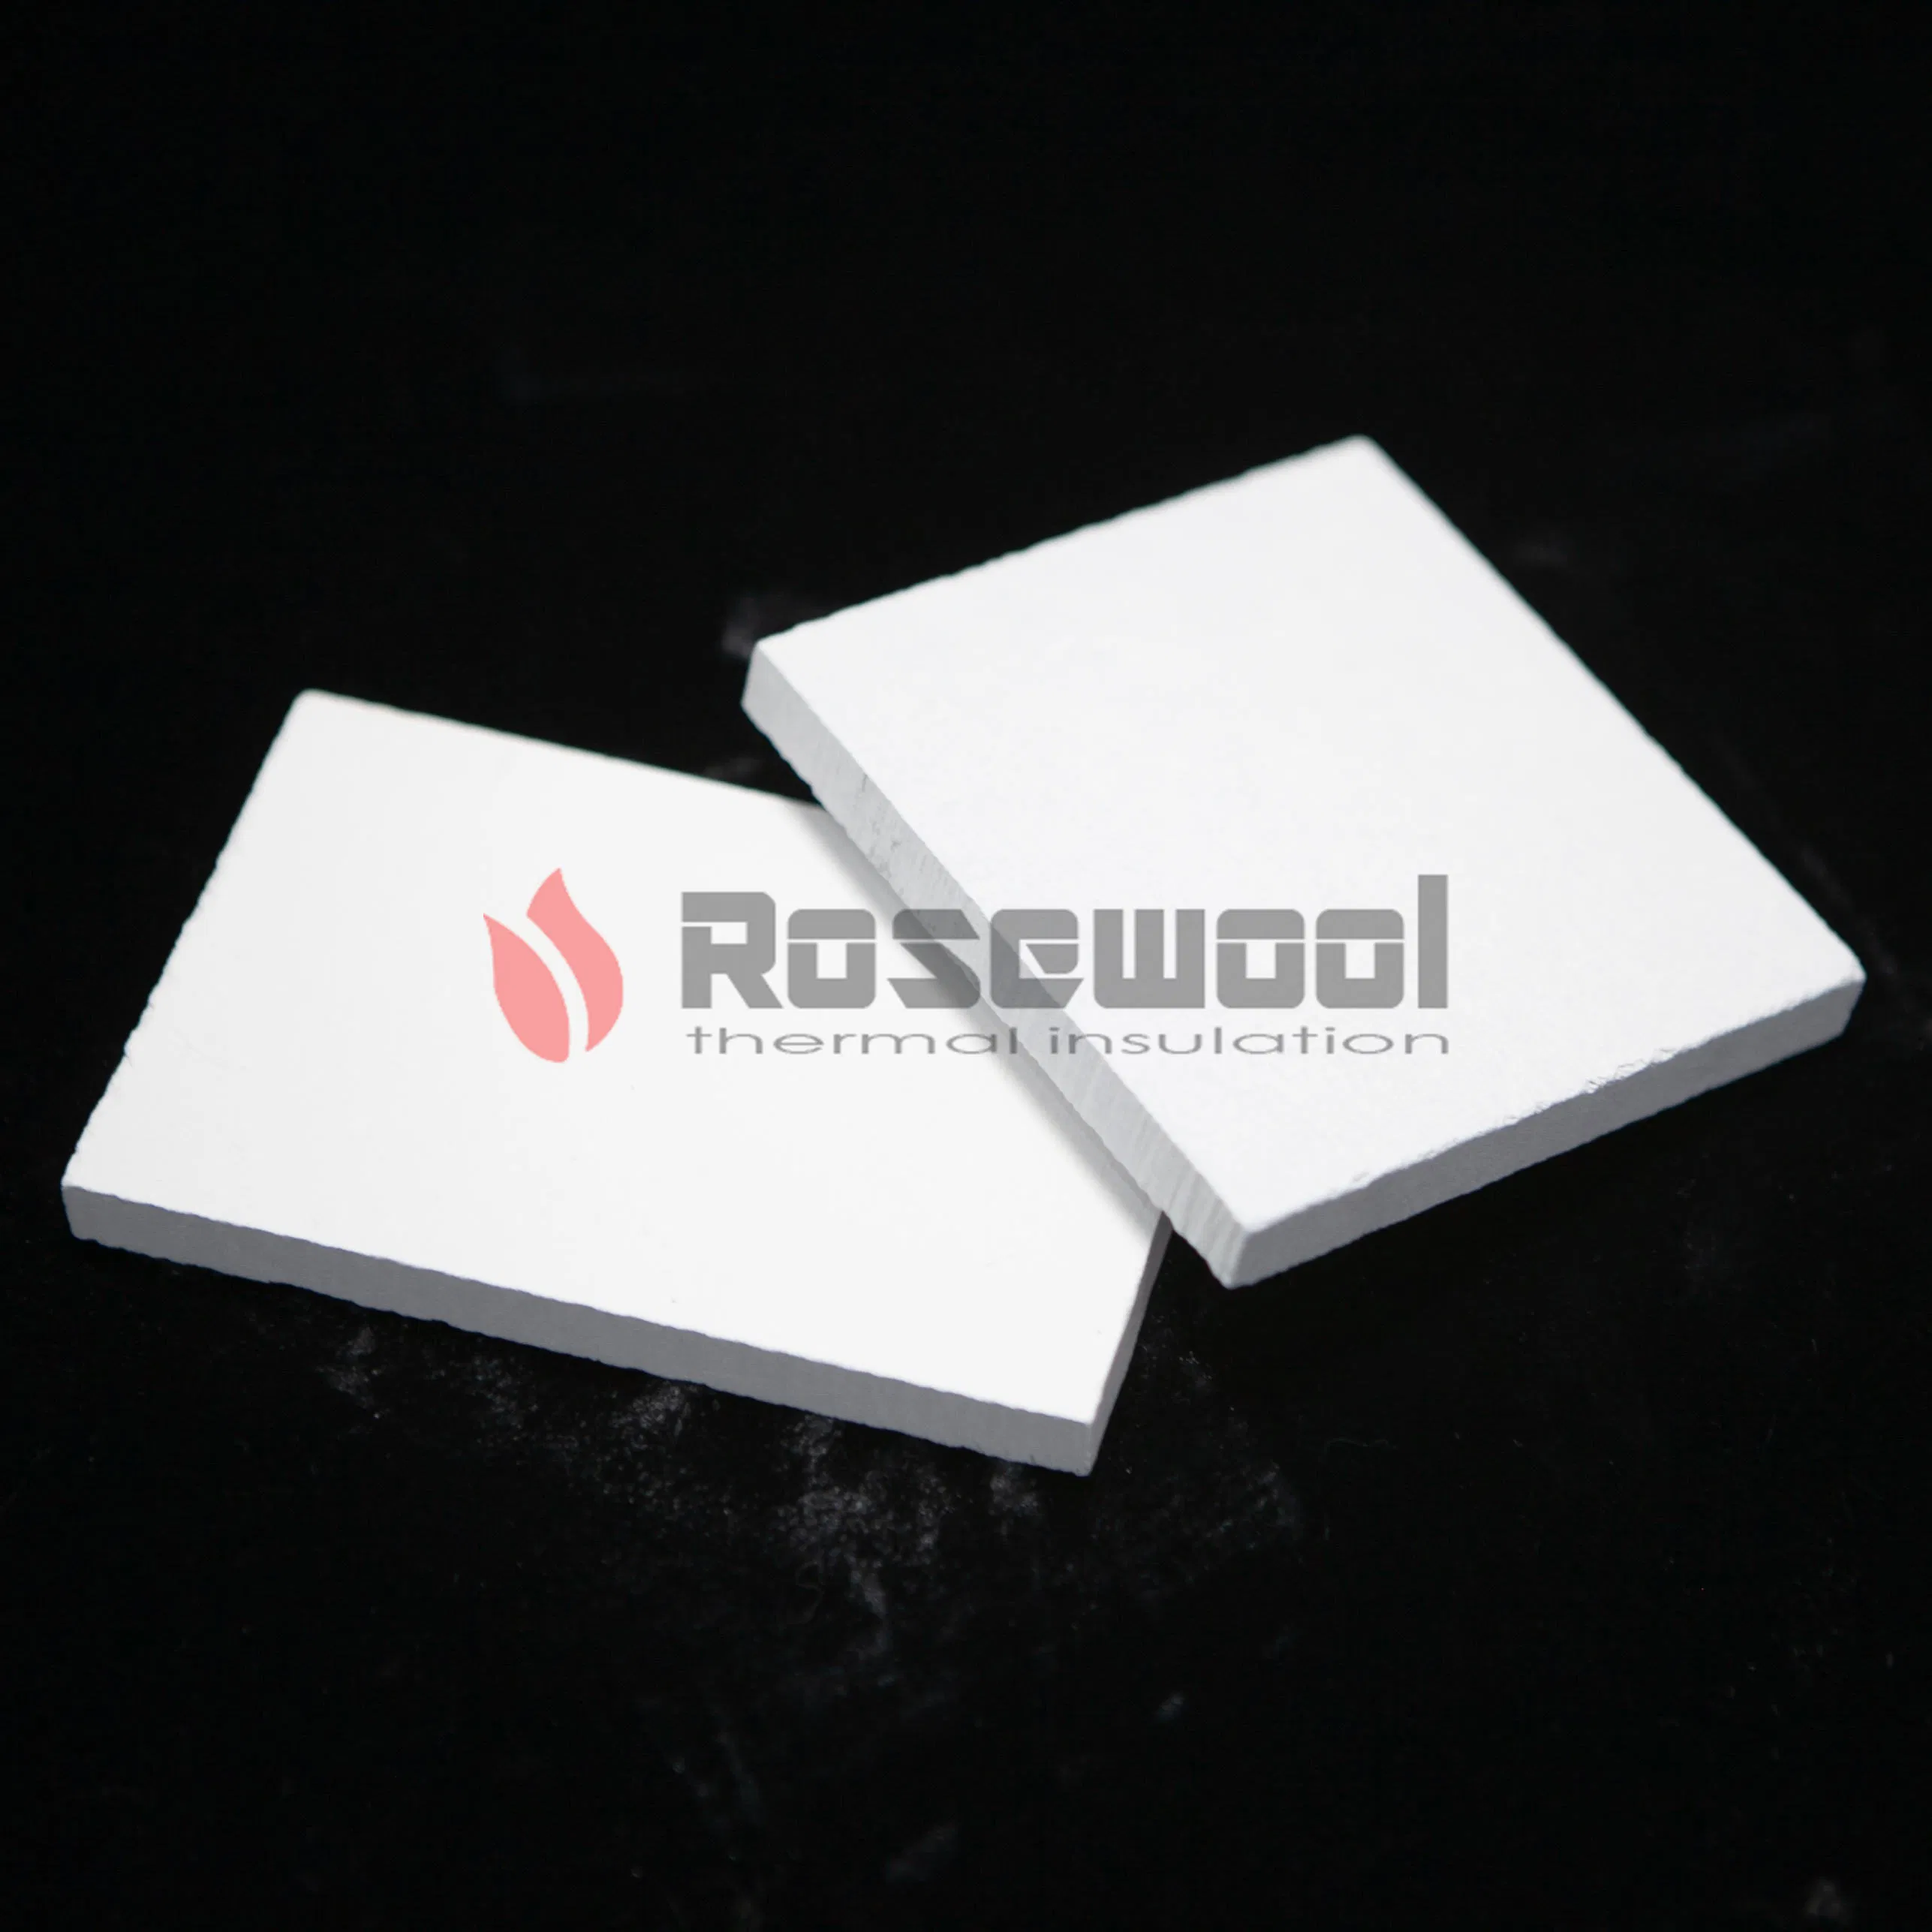 Rosewool High Density Calcium Silicate Board